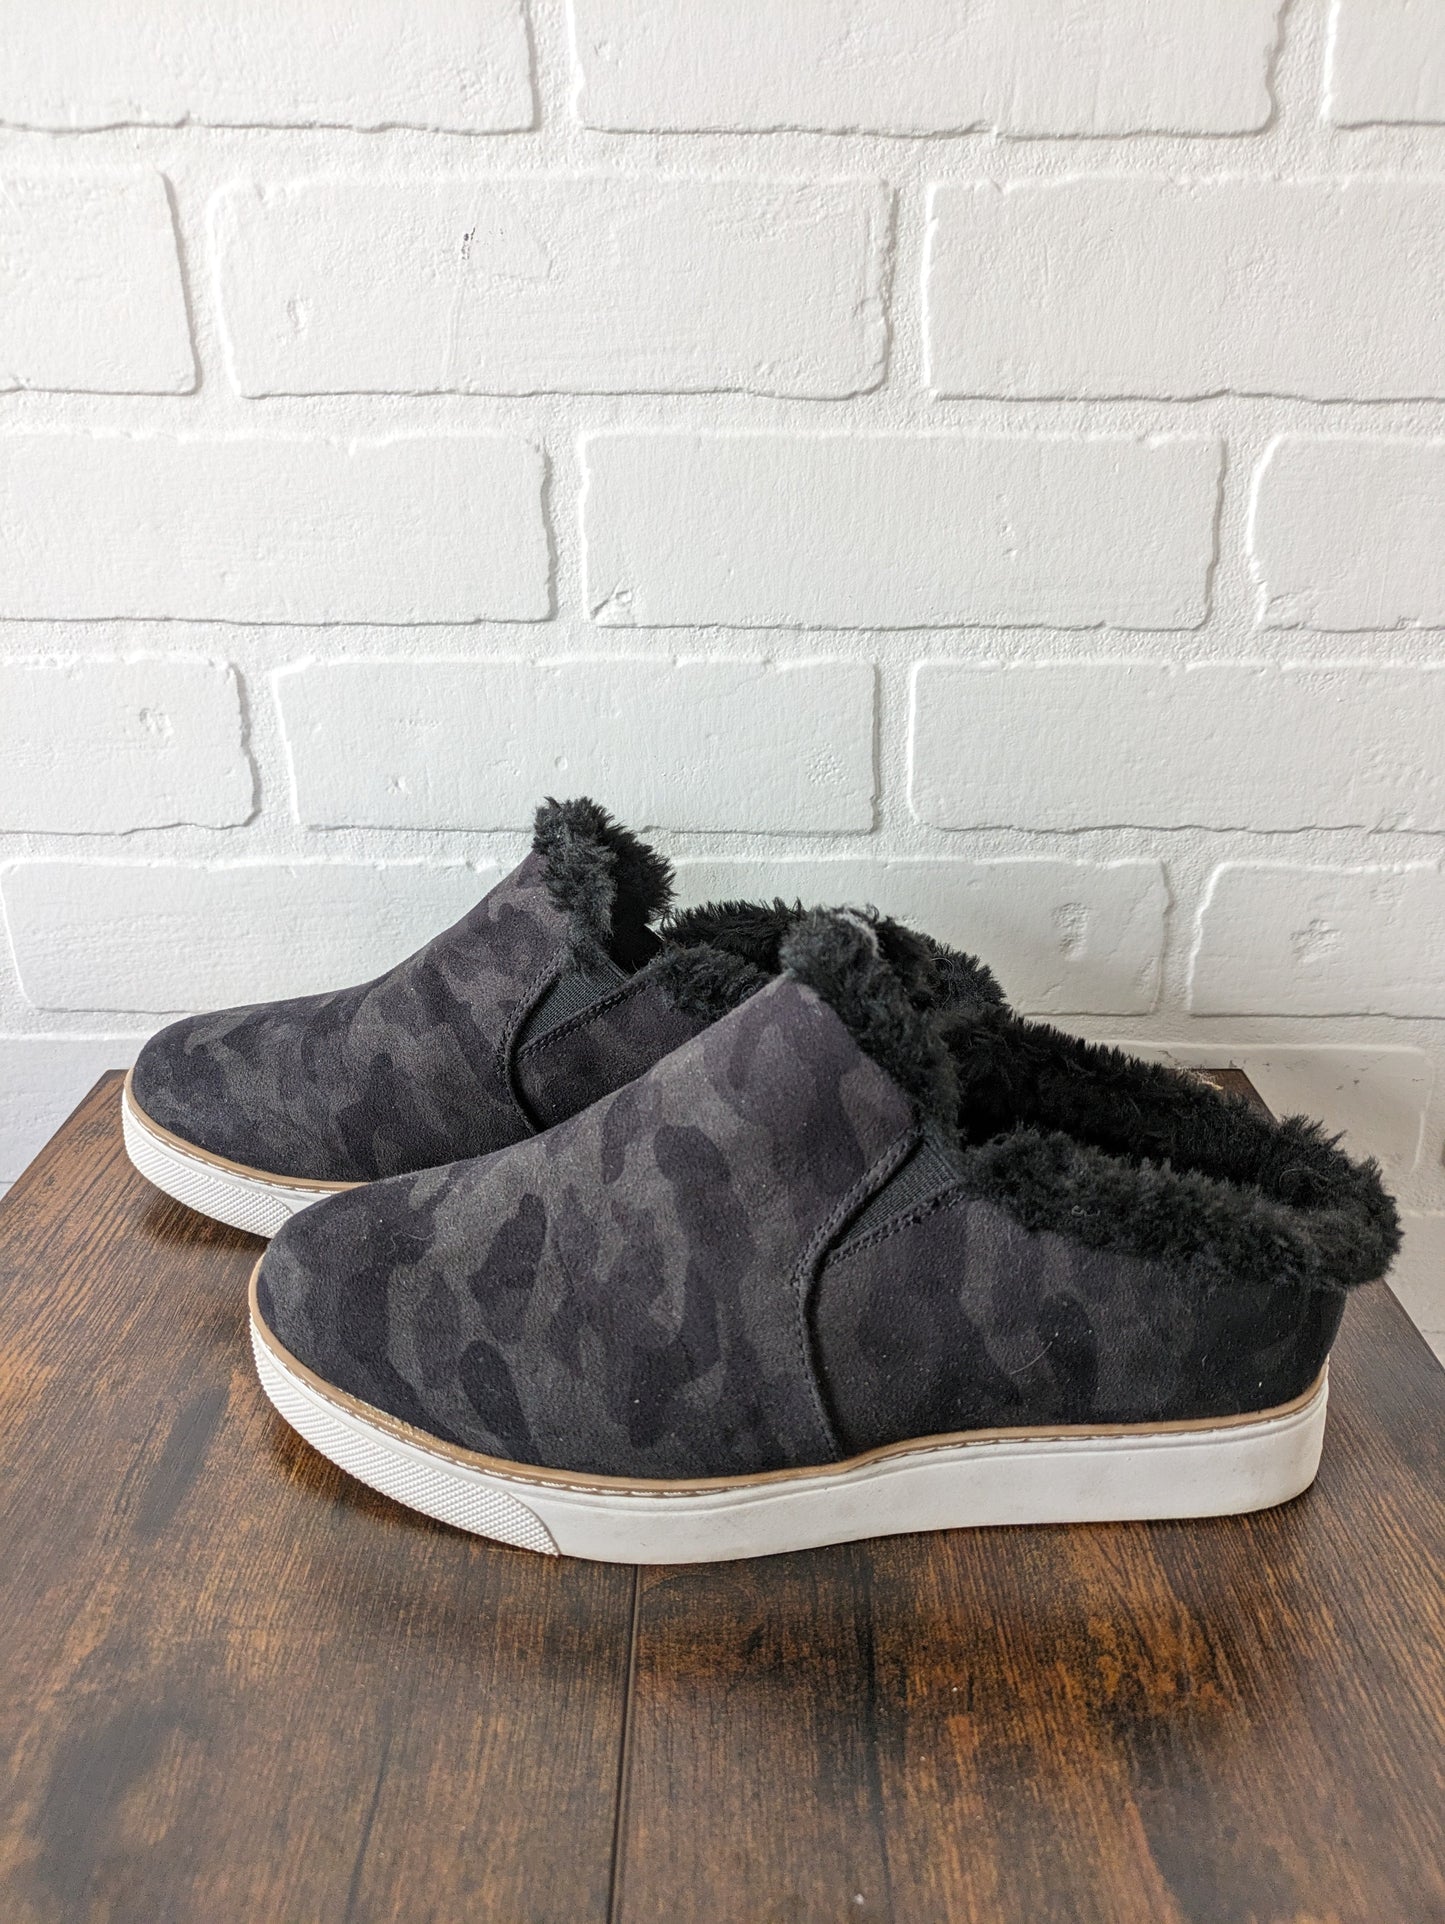 Shoes Flats Mule & Slide By Dr Scholls  Size: 6.5